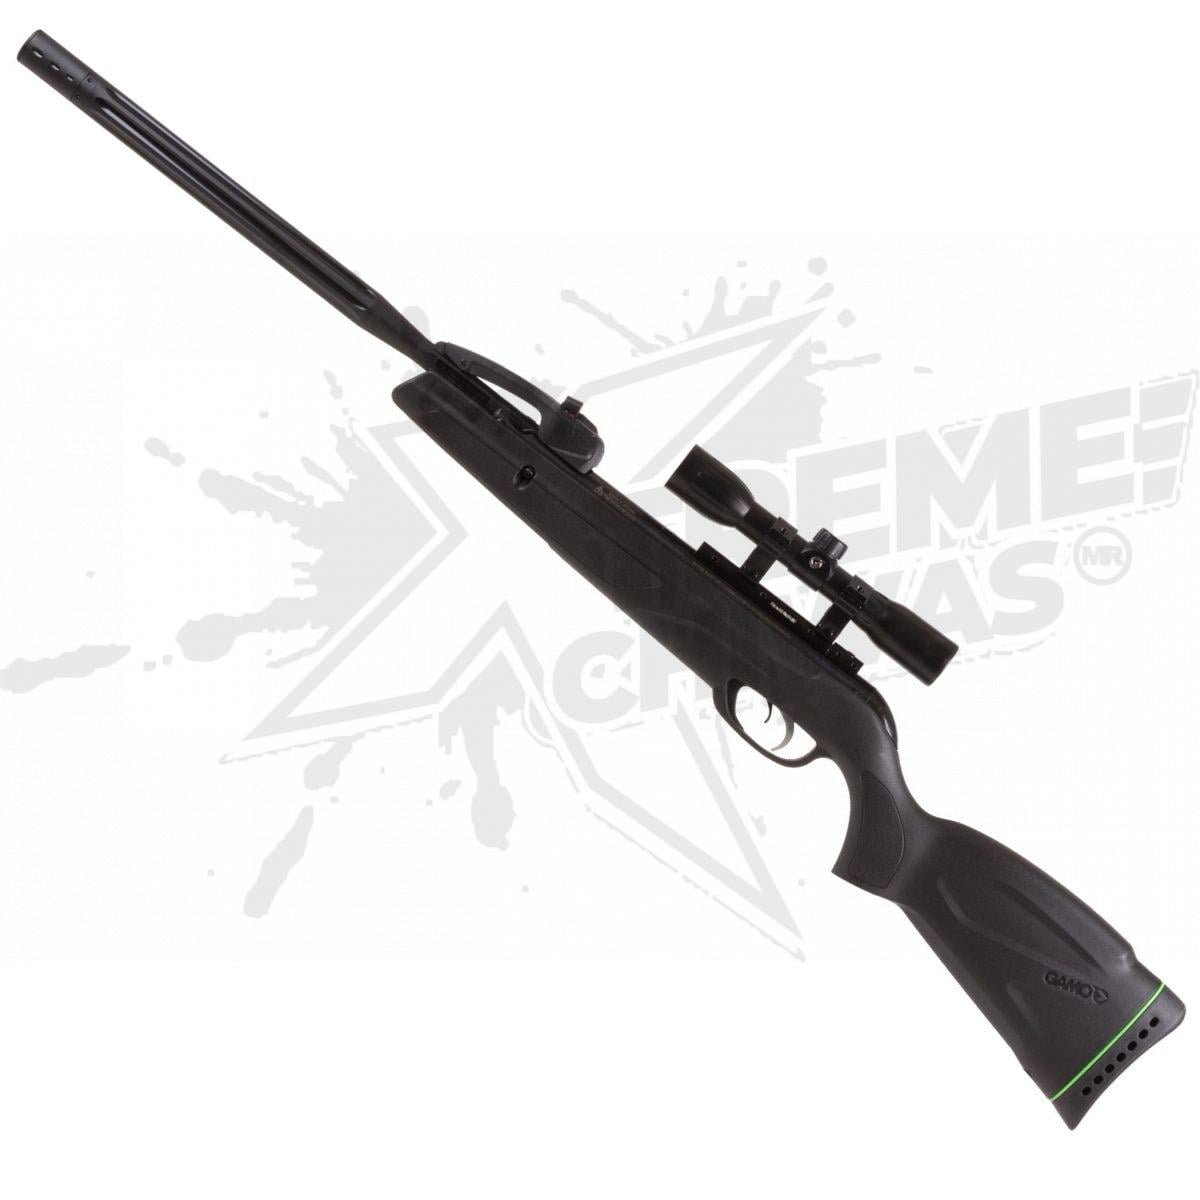 Neptune Baazar® on Instagram: Mira Gamo Aumento 1x Green Dot Rifle $200  MXN 🔱 Esta mira de rifle de punto verde con aumento de 1x de Gamo es ideal  para usar en